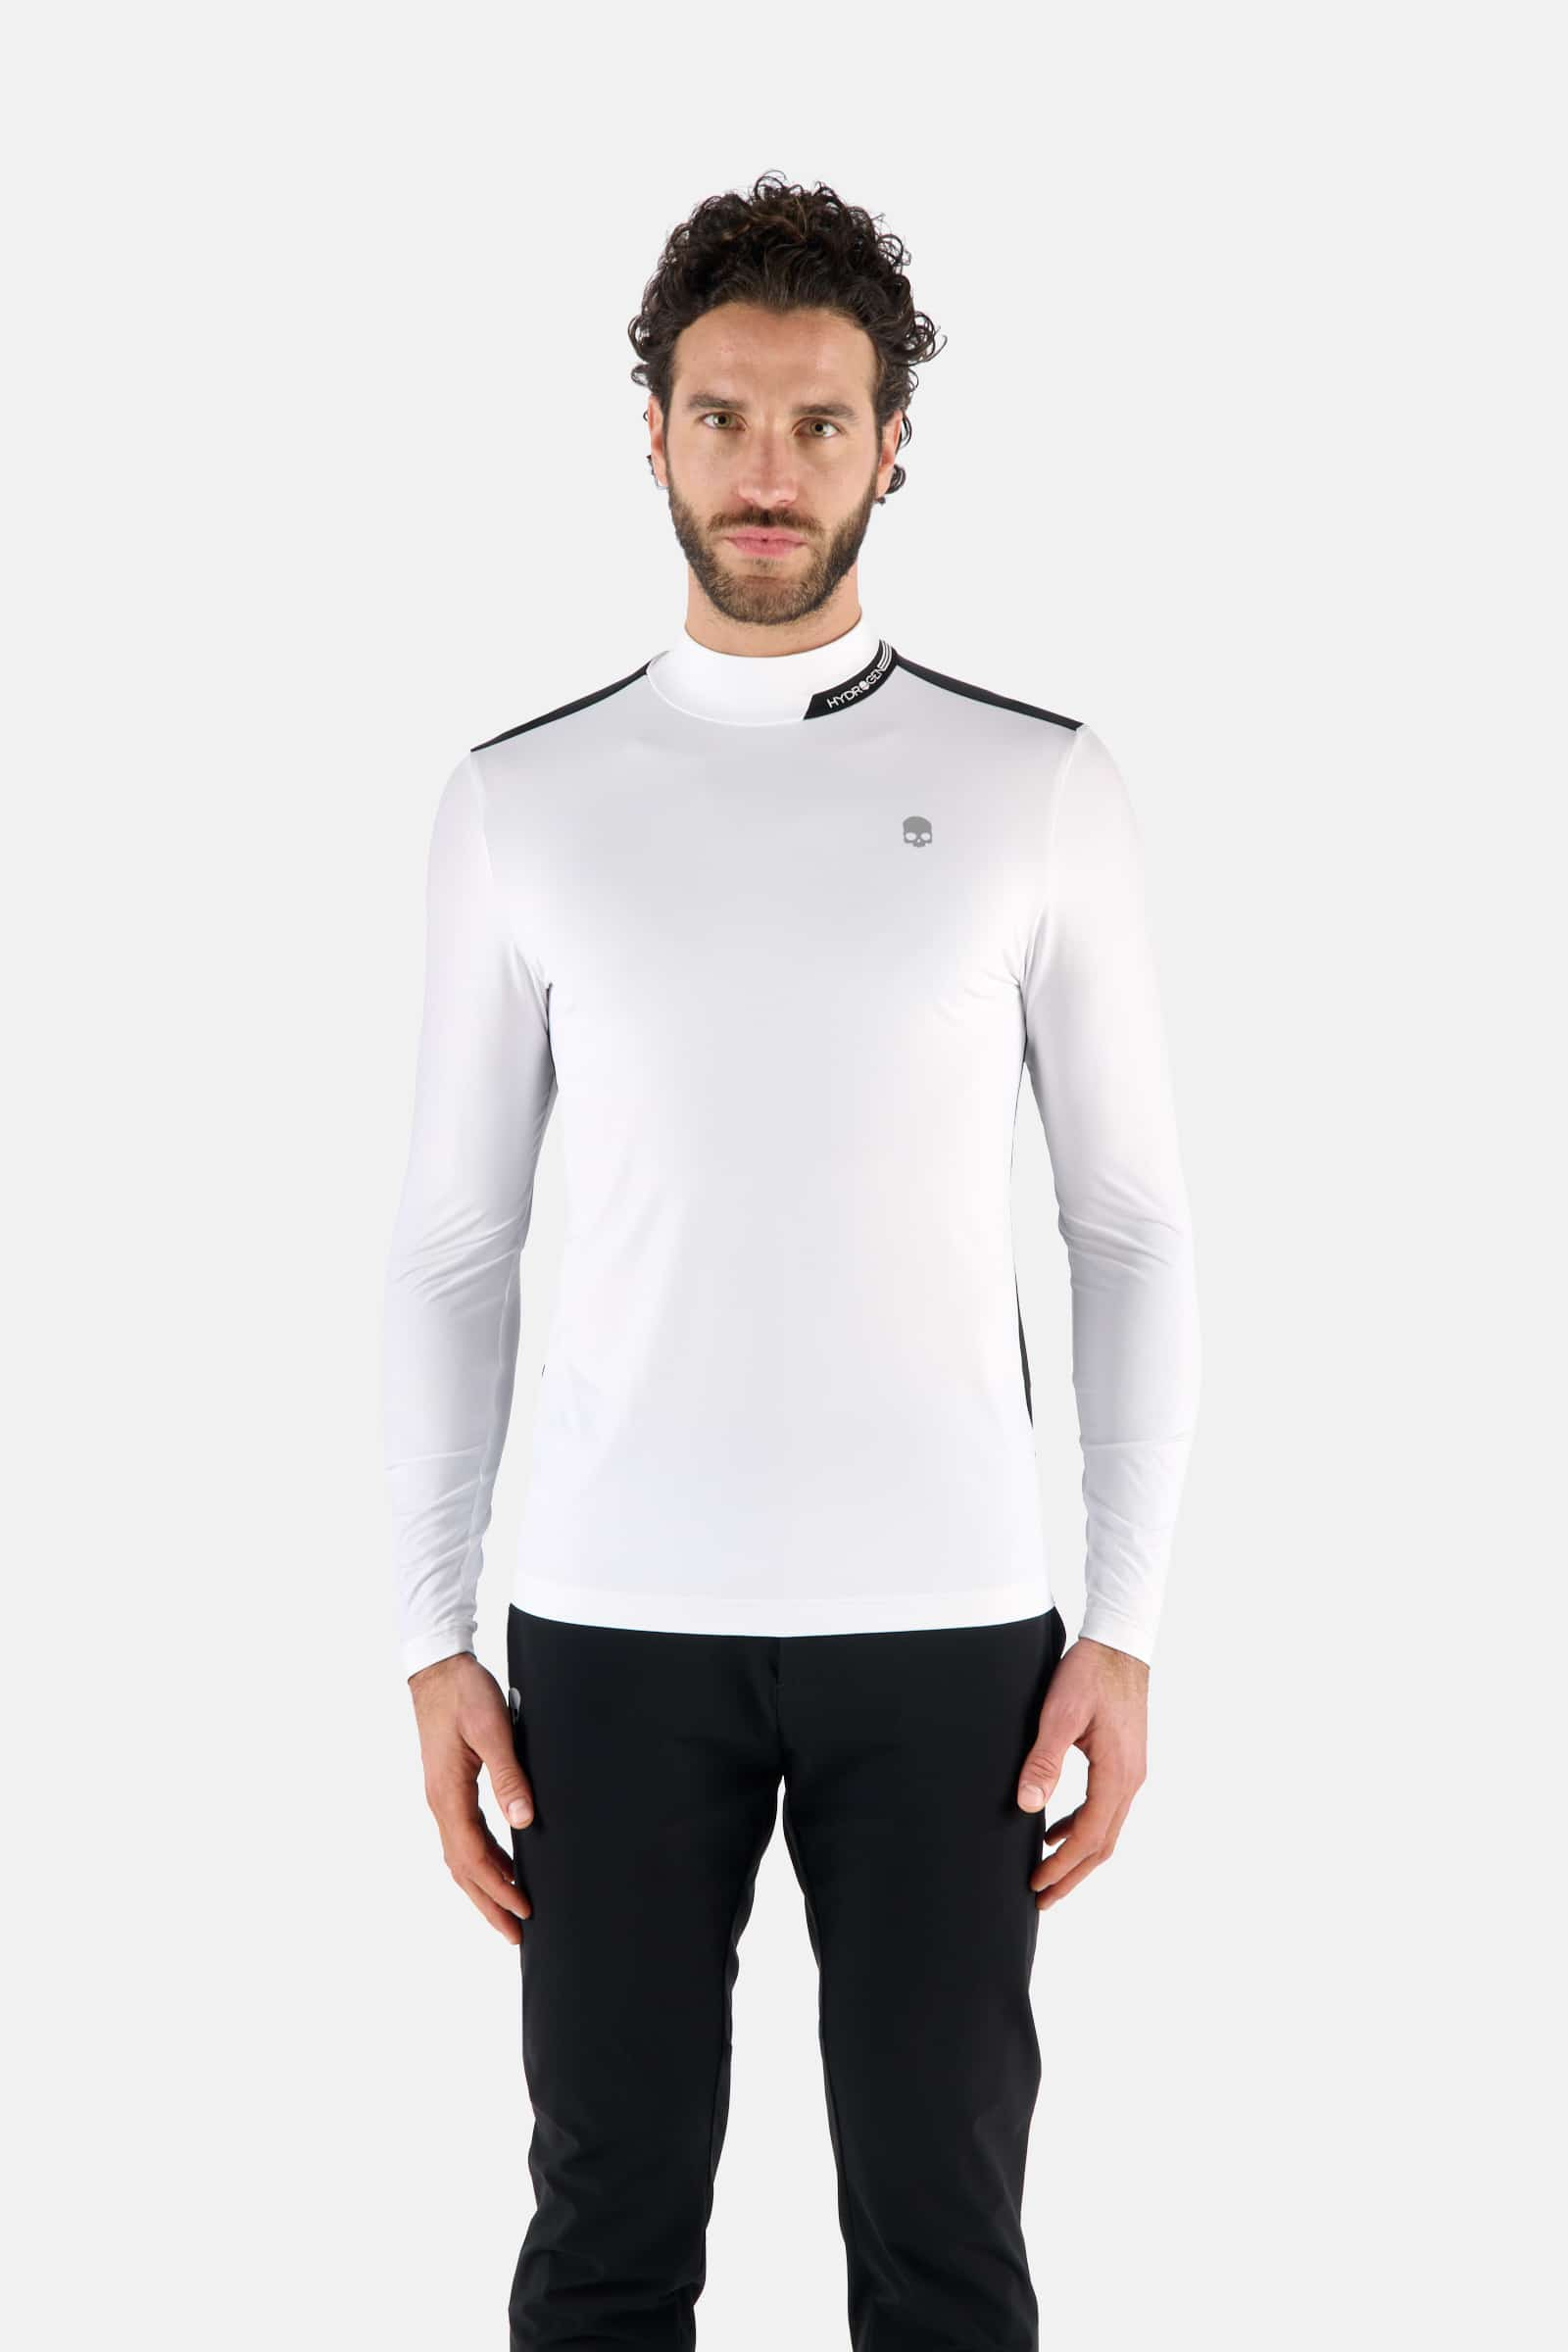 ROLL NECK LS - WHITE,BLACK - Hydrogen - Luxury Sportwear